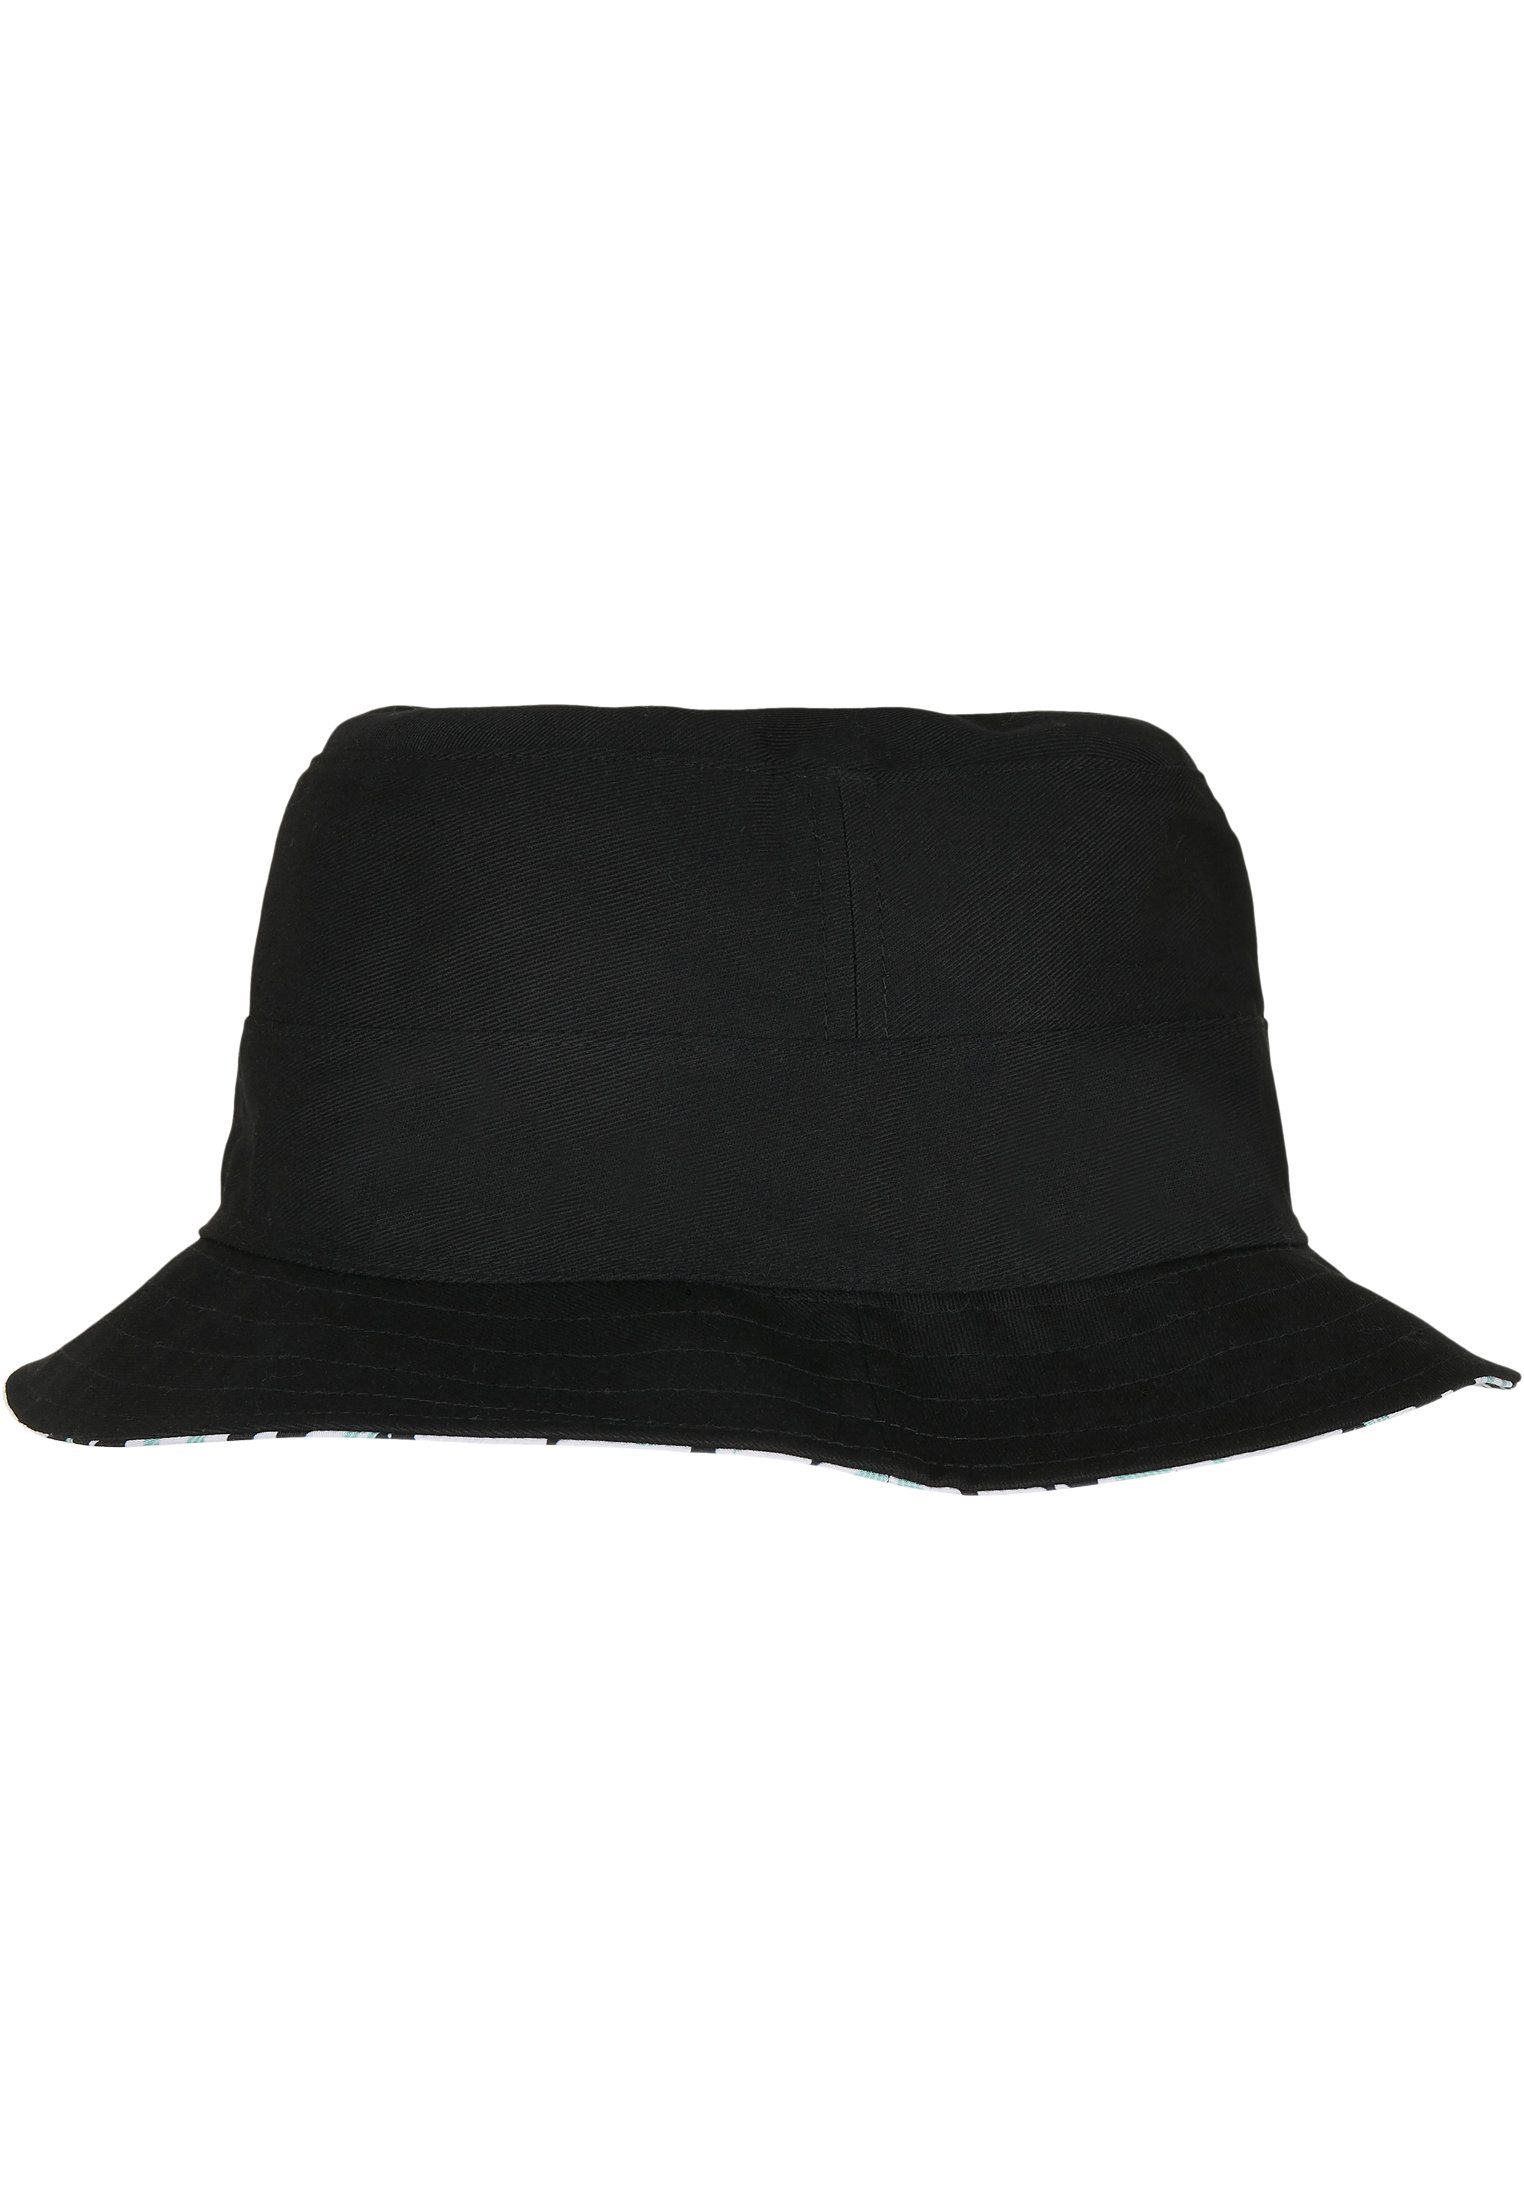 SONS Summer Flex Cap Bucket CAYLER Aztec Reversible WL Hat & C&S